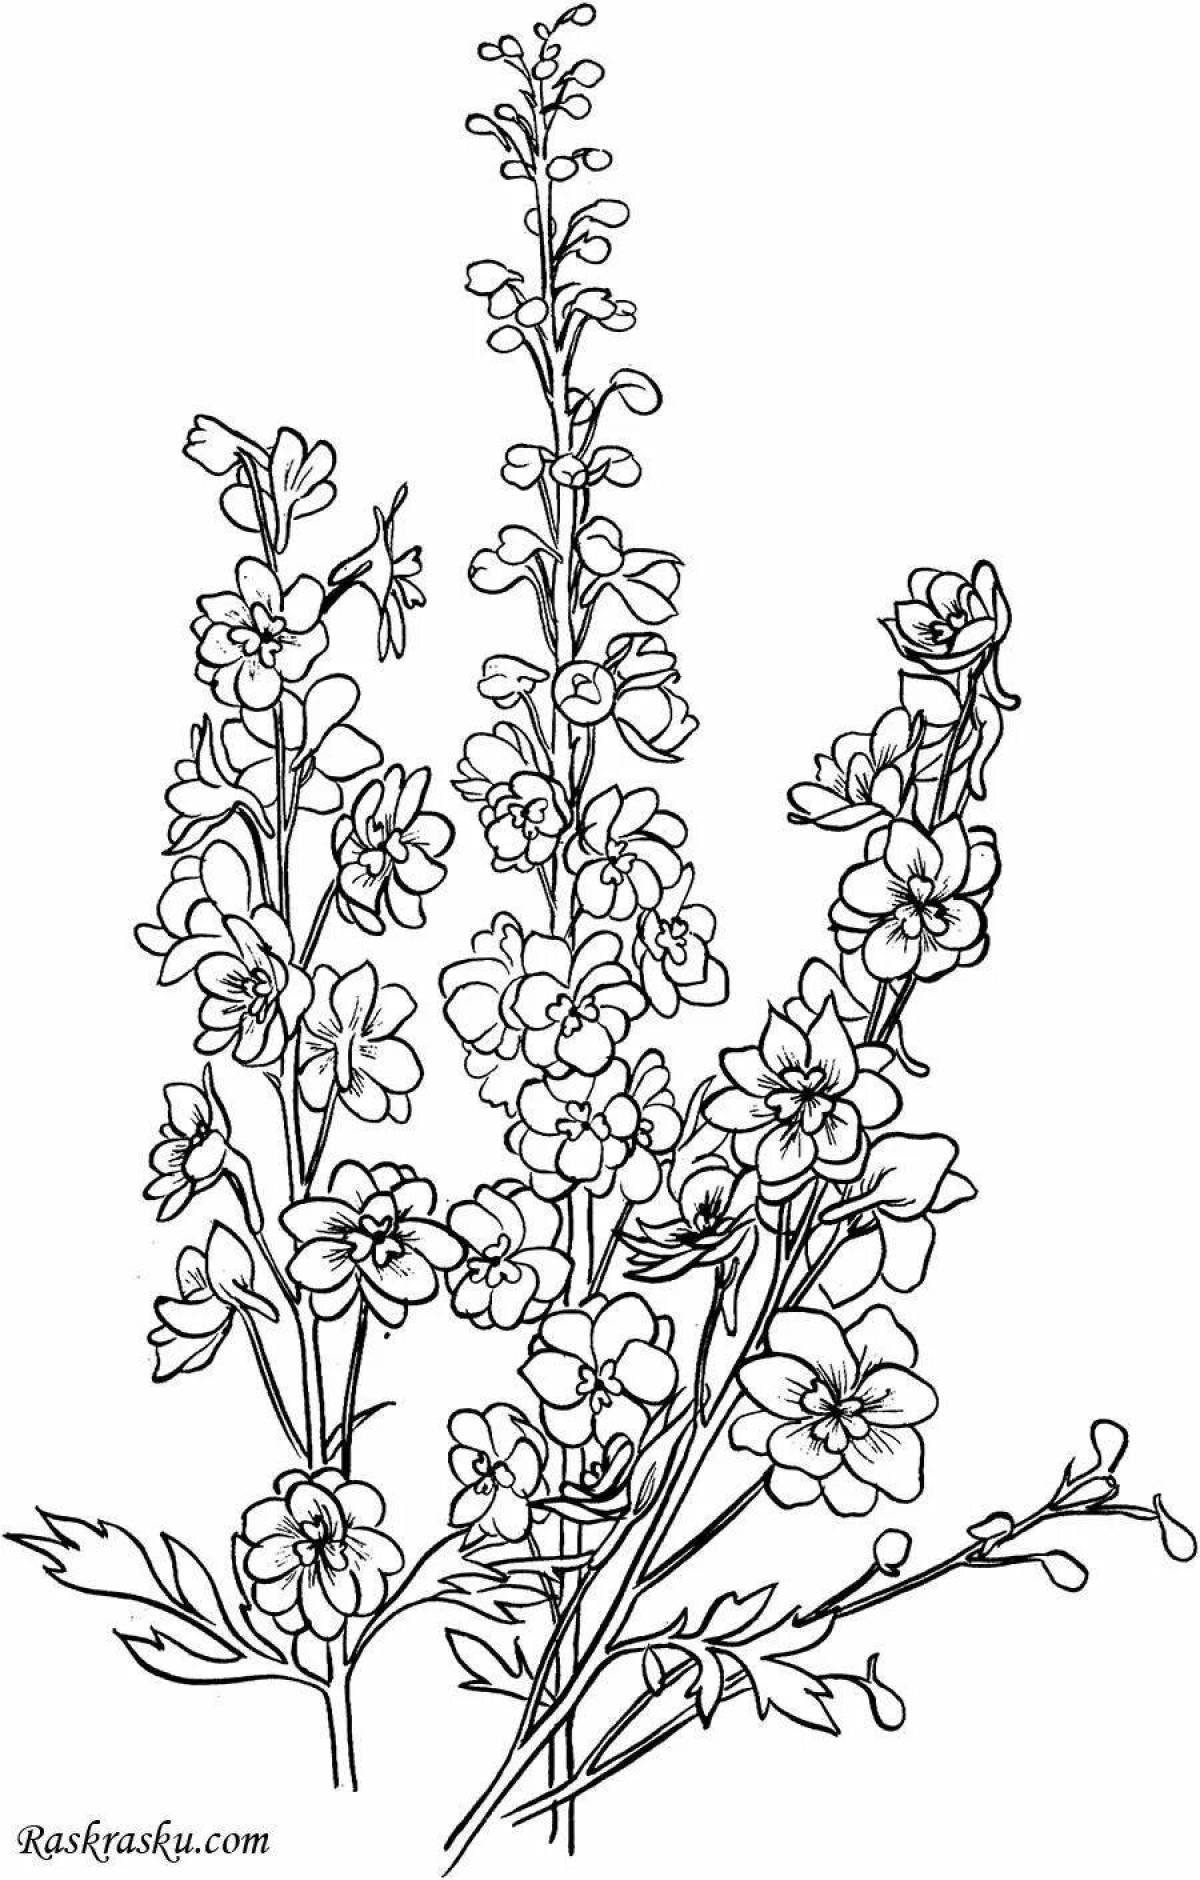 Adorable primrose corydalis coloring page